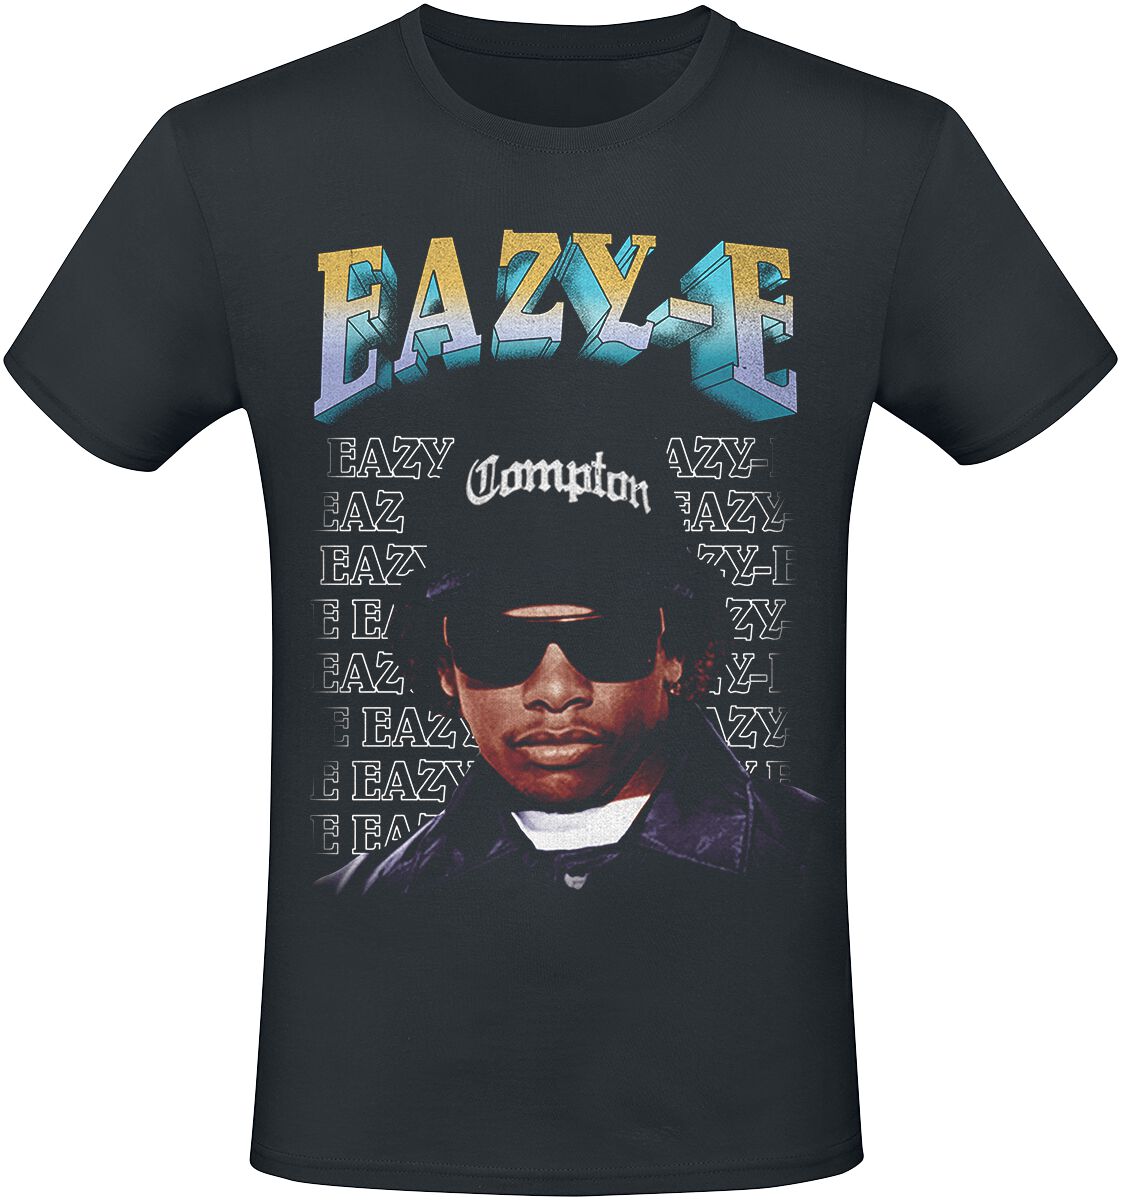 Eazy-E T-Shirt - Compton - S bis 3XL - für Männer - Größe 3XL - schwarz  - Lizenziertes Merchandise!